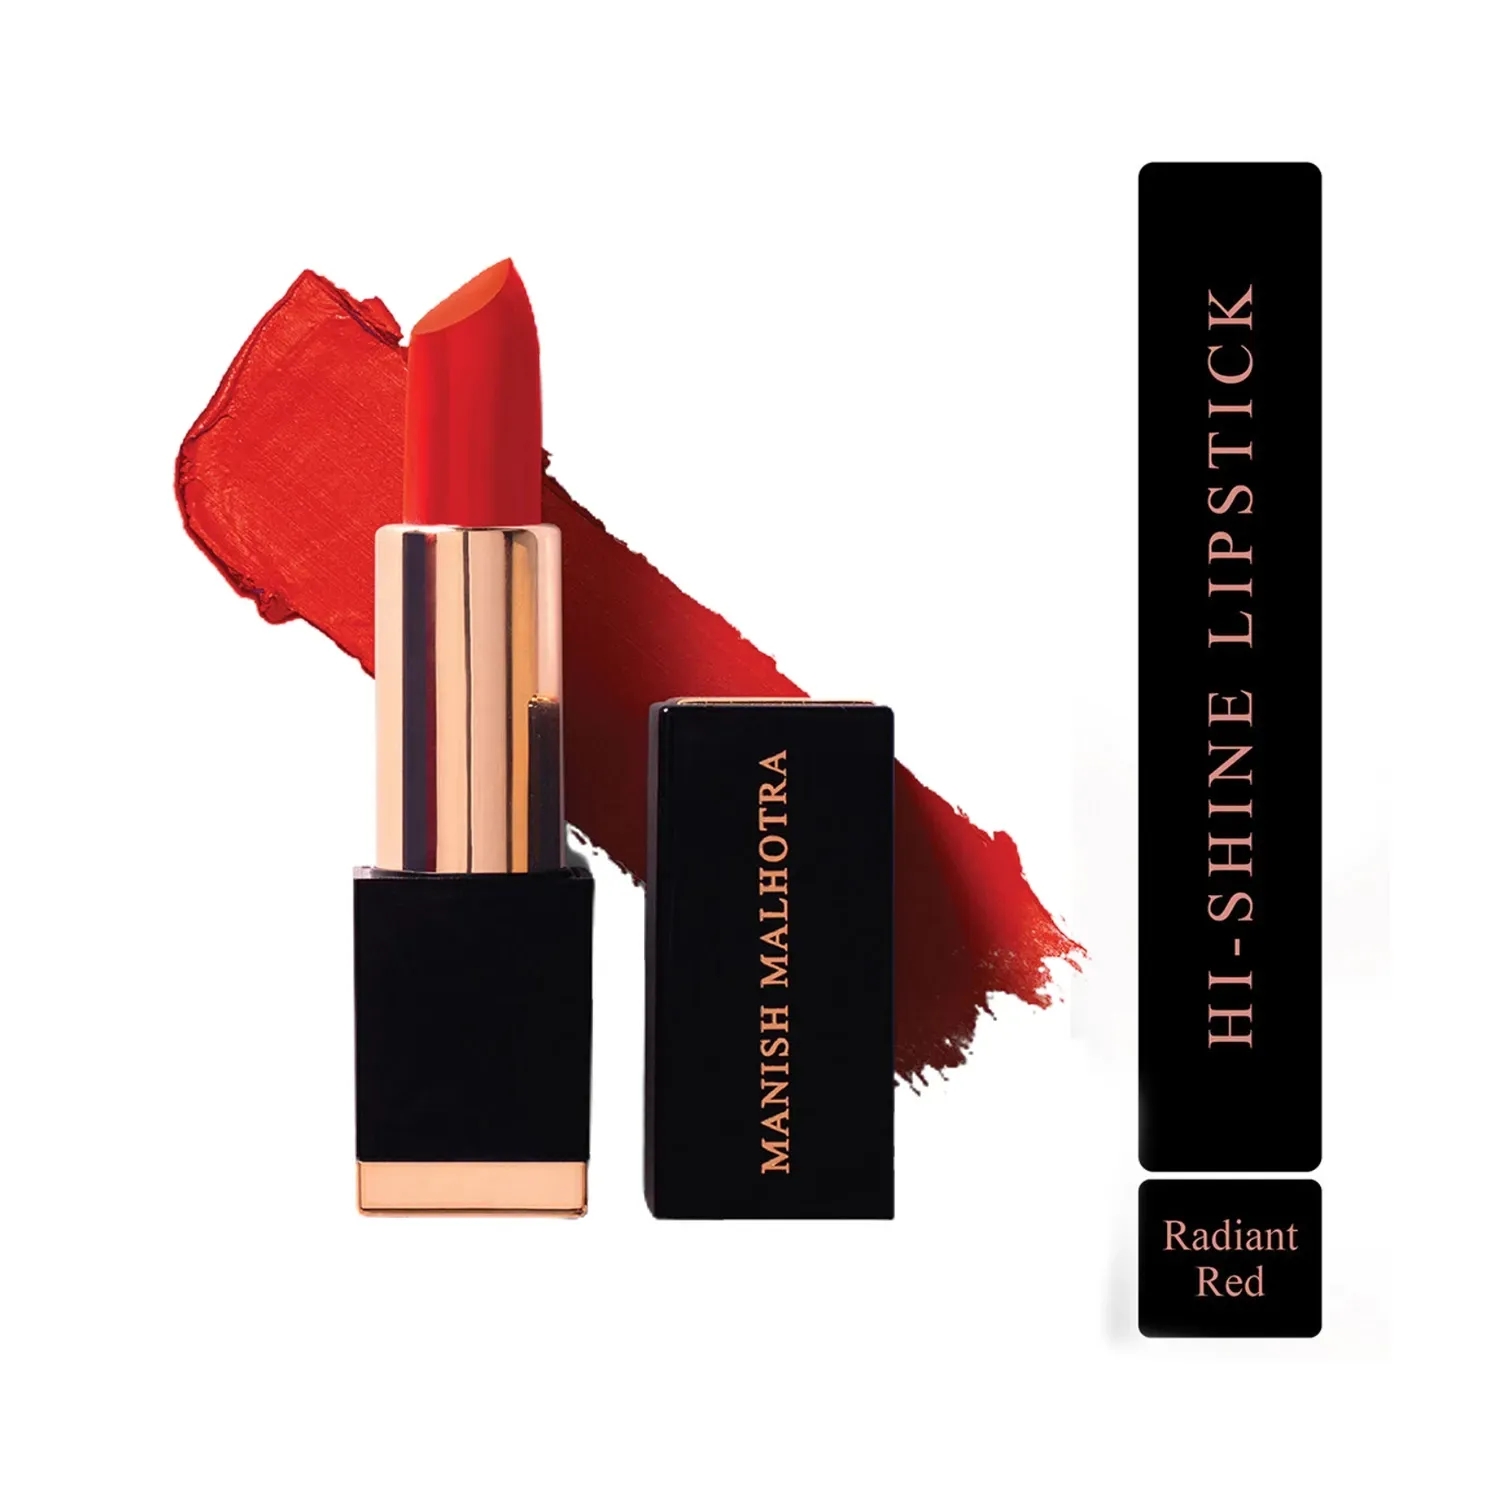 MyGlamm | MyGlamm Manish Malhotra Hi-Shine Lipstick - Radiant Red (4g)